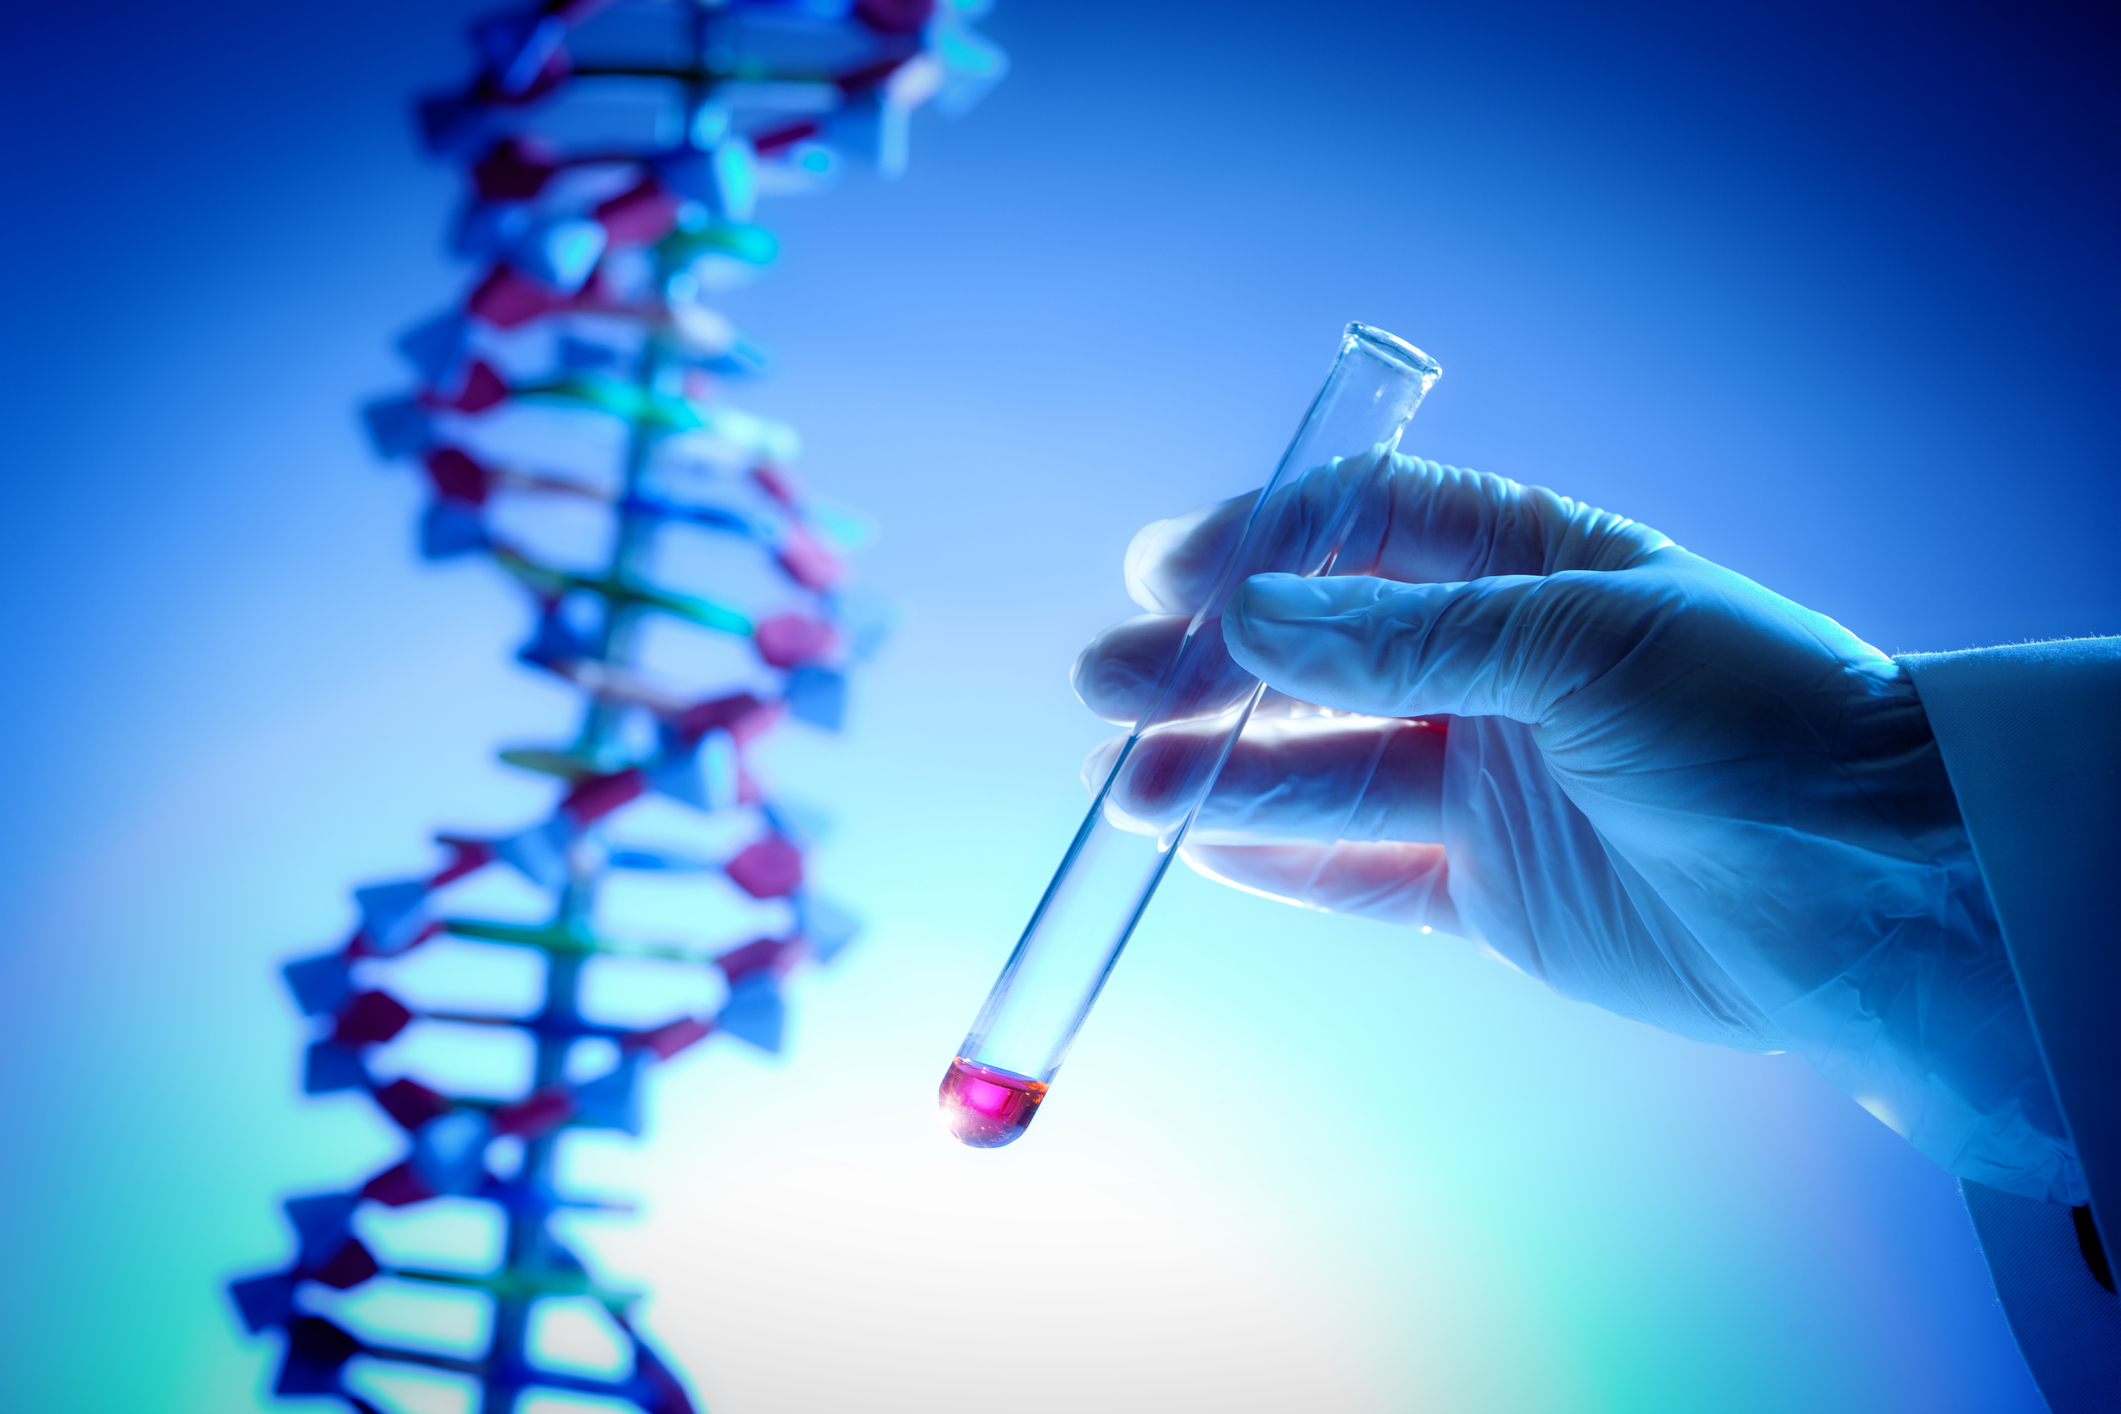 Изучение наследственных заболеваний. Исследование ДНК. ДНК В пробирке. Изучение ДНК человека. Молекулярно-генетическое тестирование.